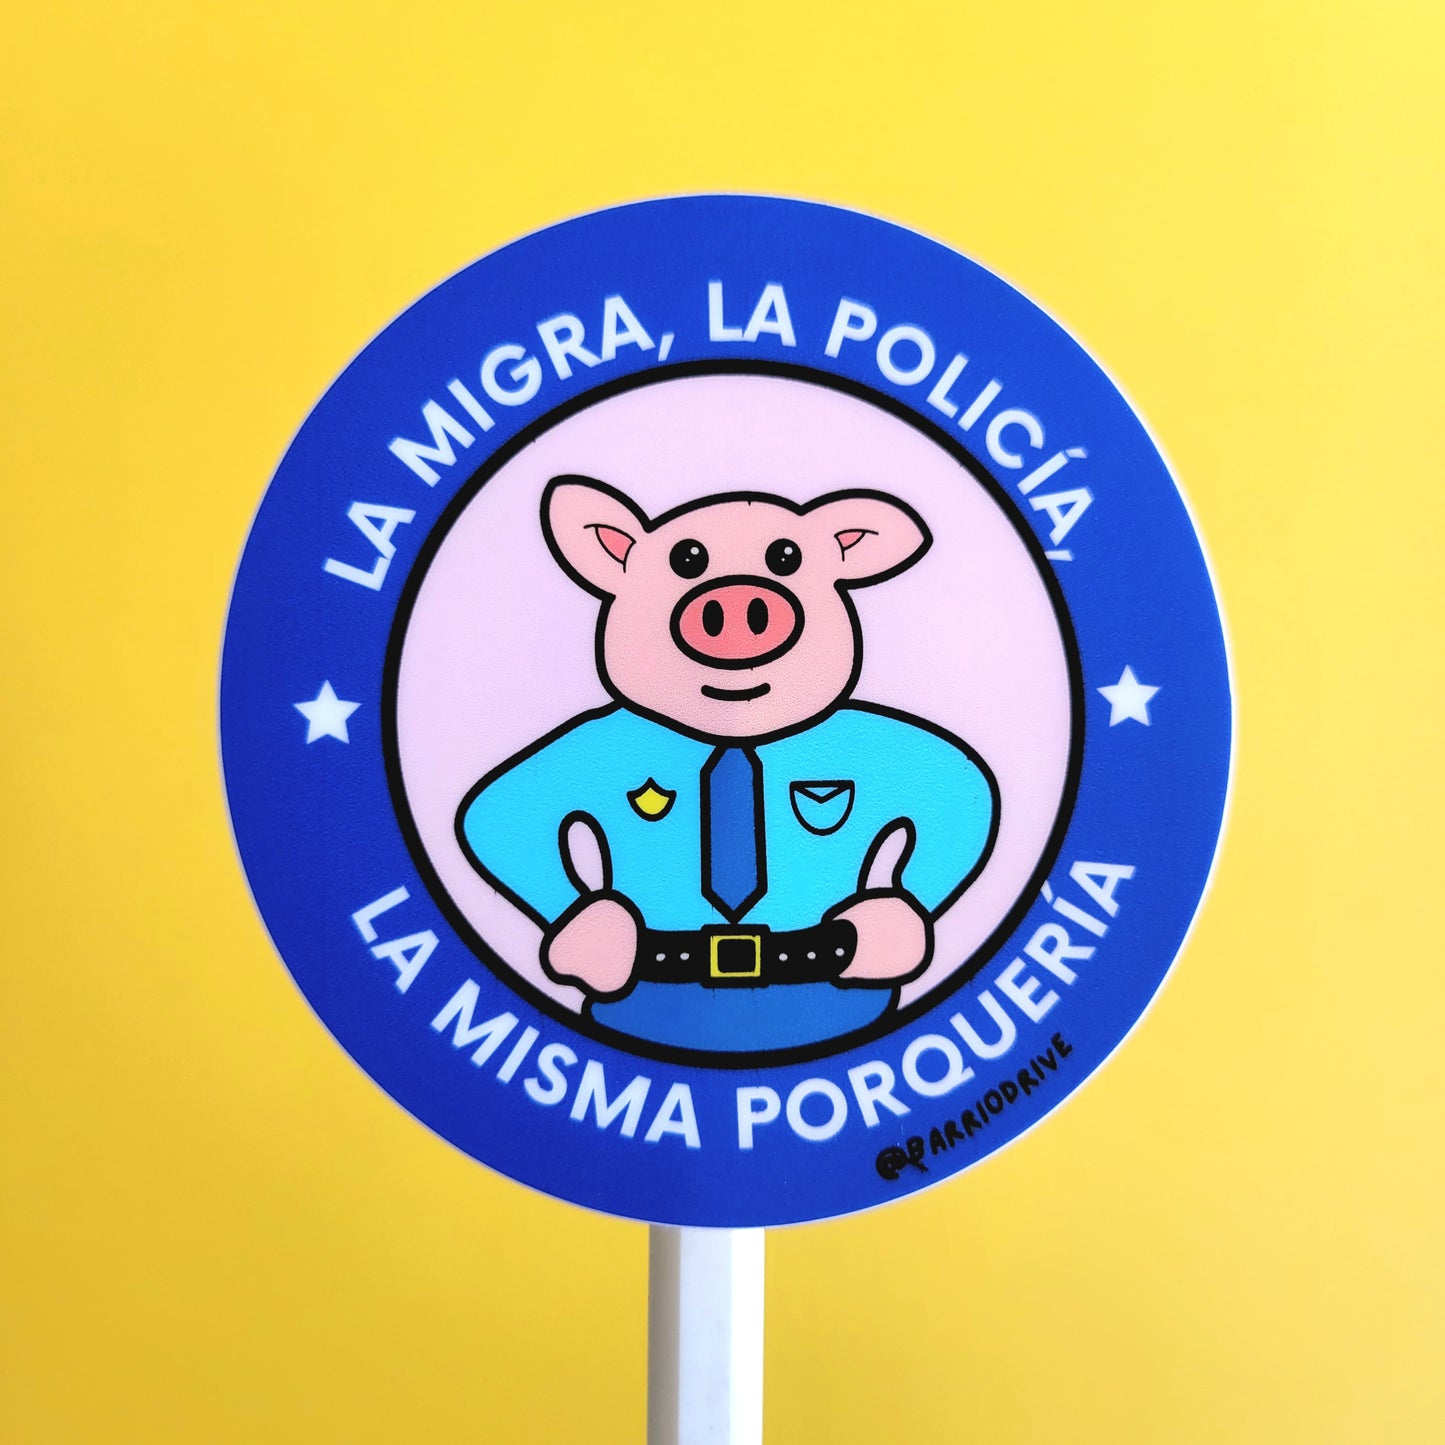 La Migra LA Policia LA Misma Porqueria